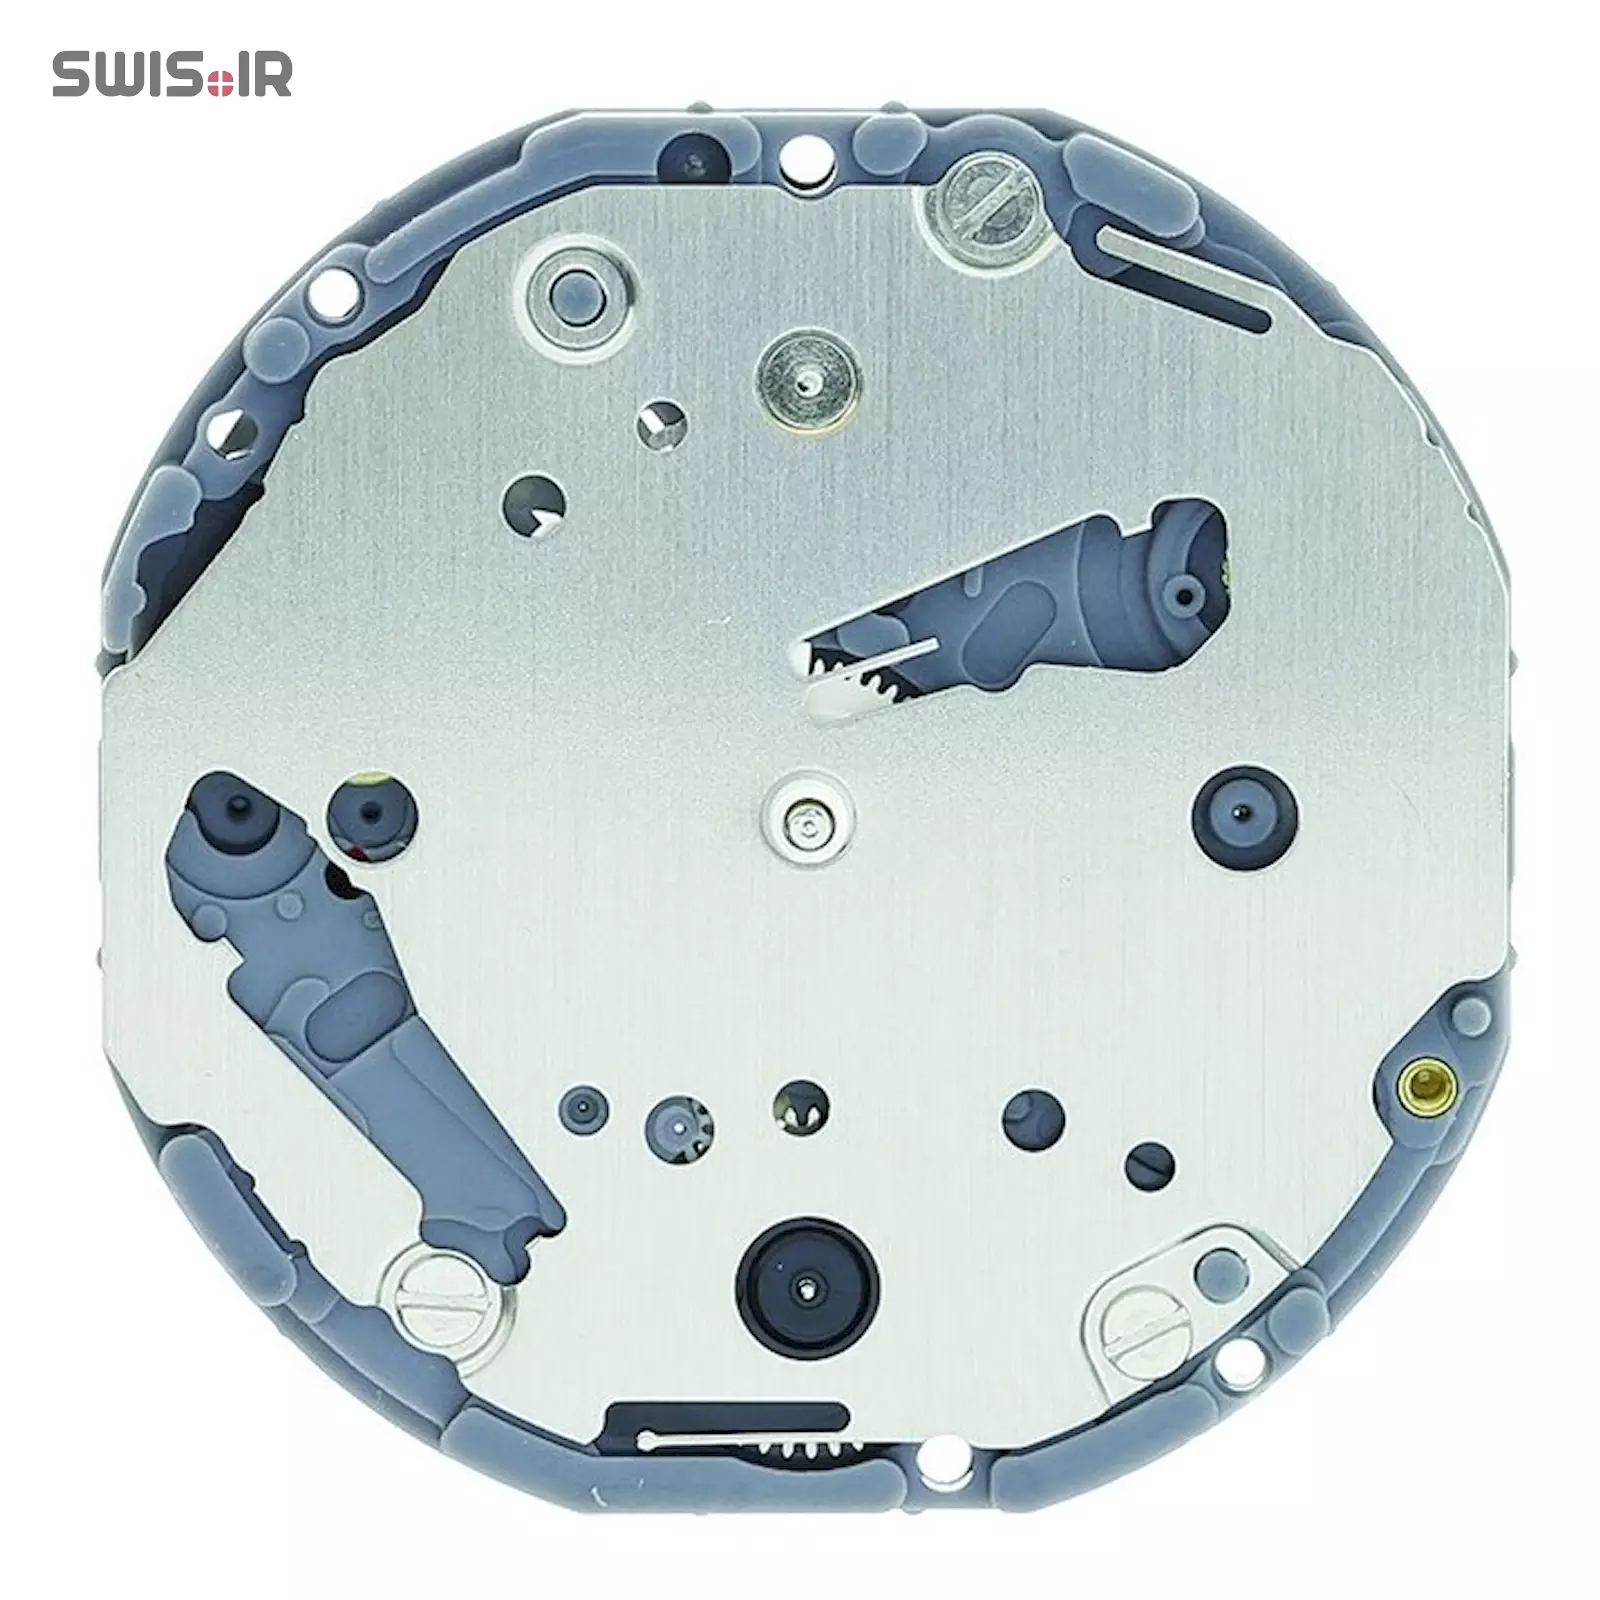 تصویر روی موتور ساعت کالیبر VD77A-SII ساخت شرکت سیکو ـ اپسون ژاپن